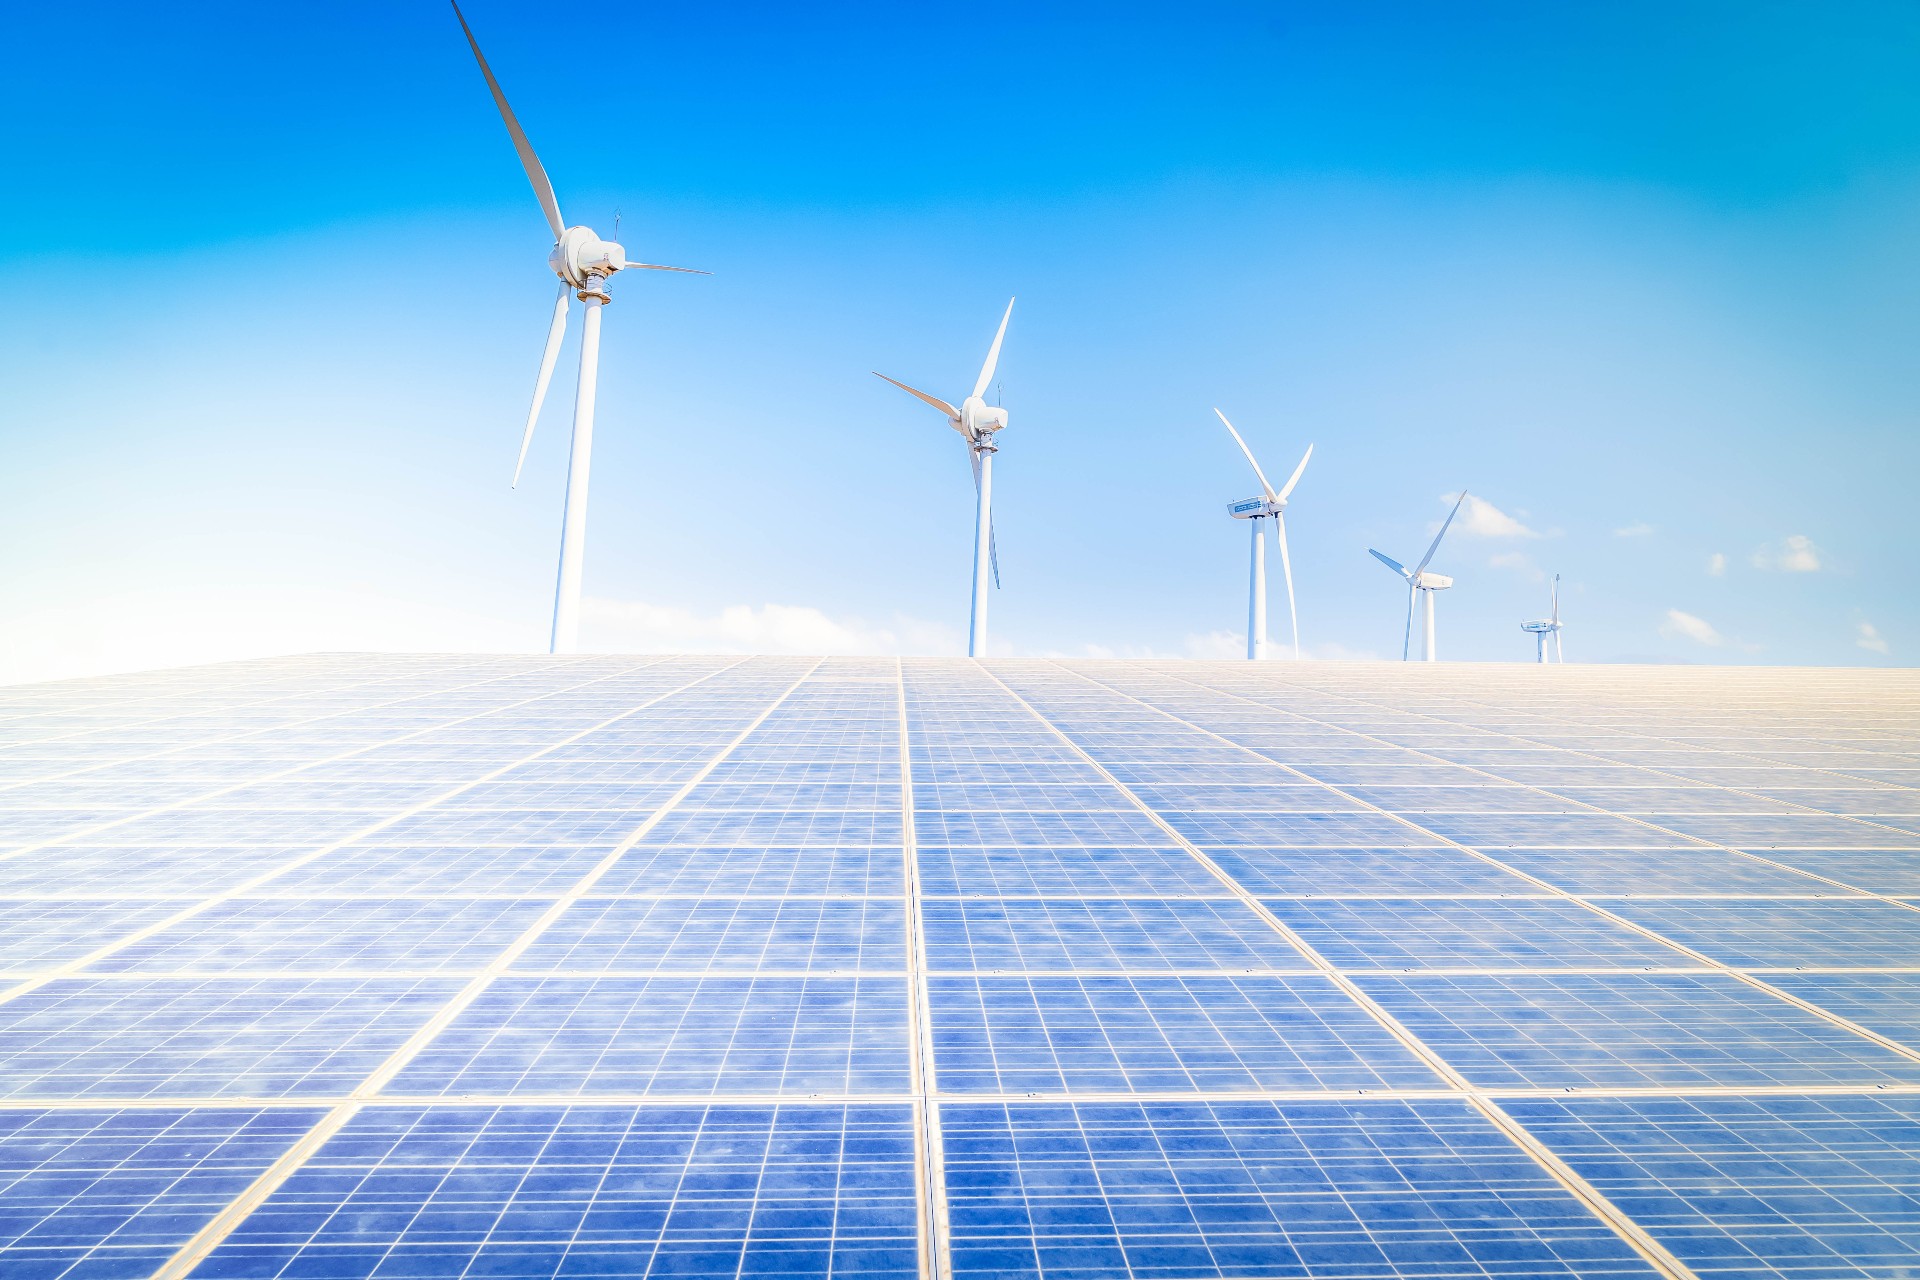 ΔΕΗ: Ξεκινά με την RWE την κατασκευή φωτοβολταϊκών έργων 280 MW στο Αμύνταιο